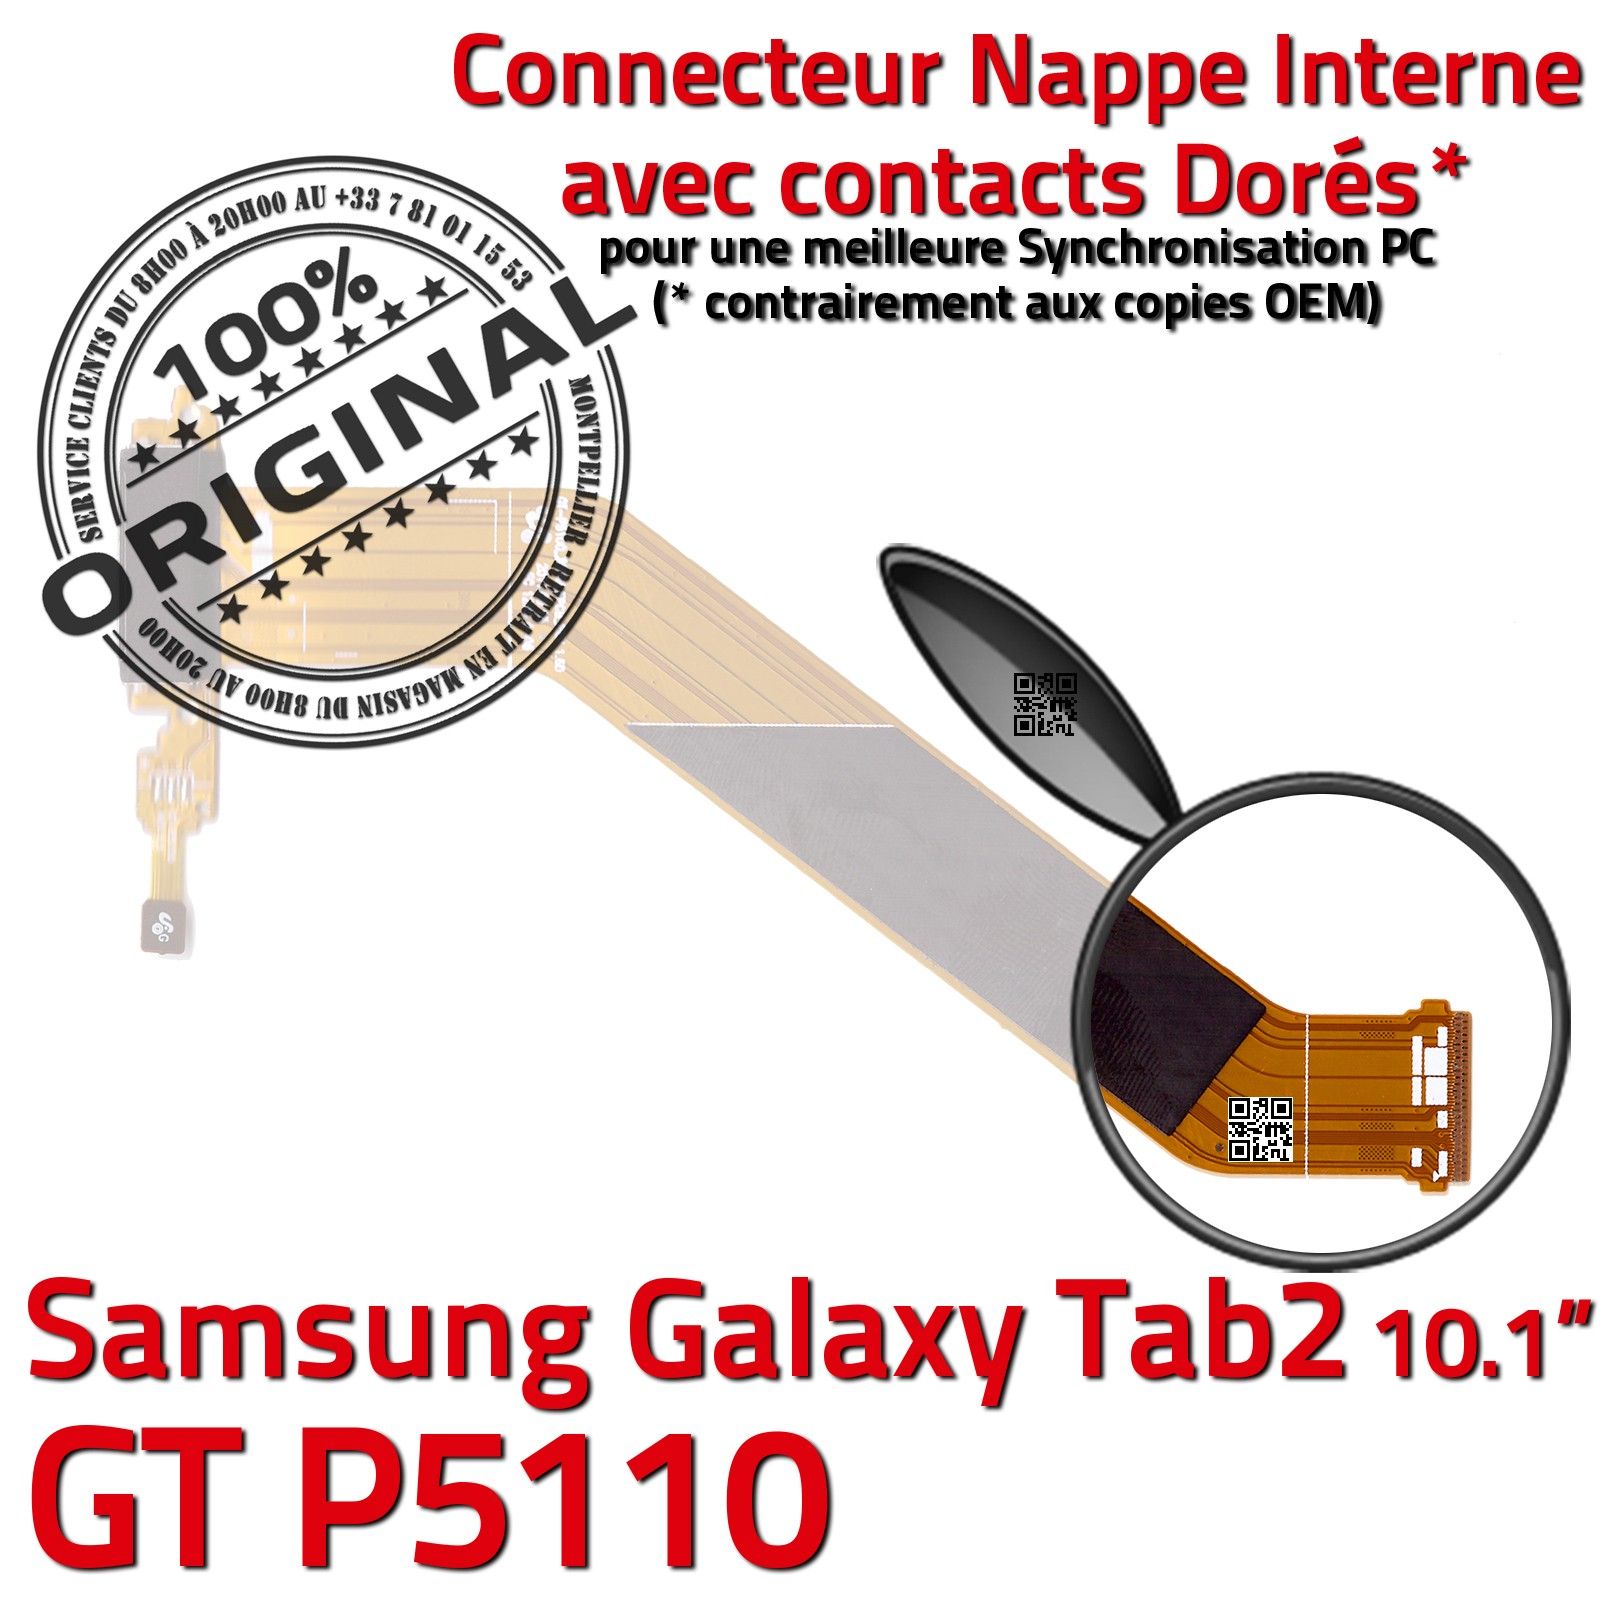 ORIGINAL Samsung Galaxy TAB2 GT-P5110 Connecteur de Charge Chargeur MicroUSB Nappe OFFICIELLE Qualité Contacts Dorés Réparation